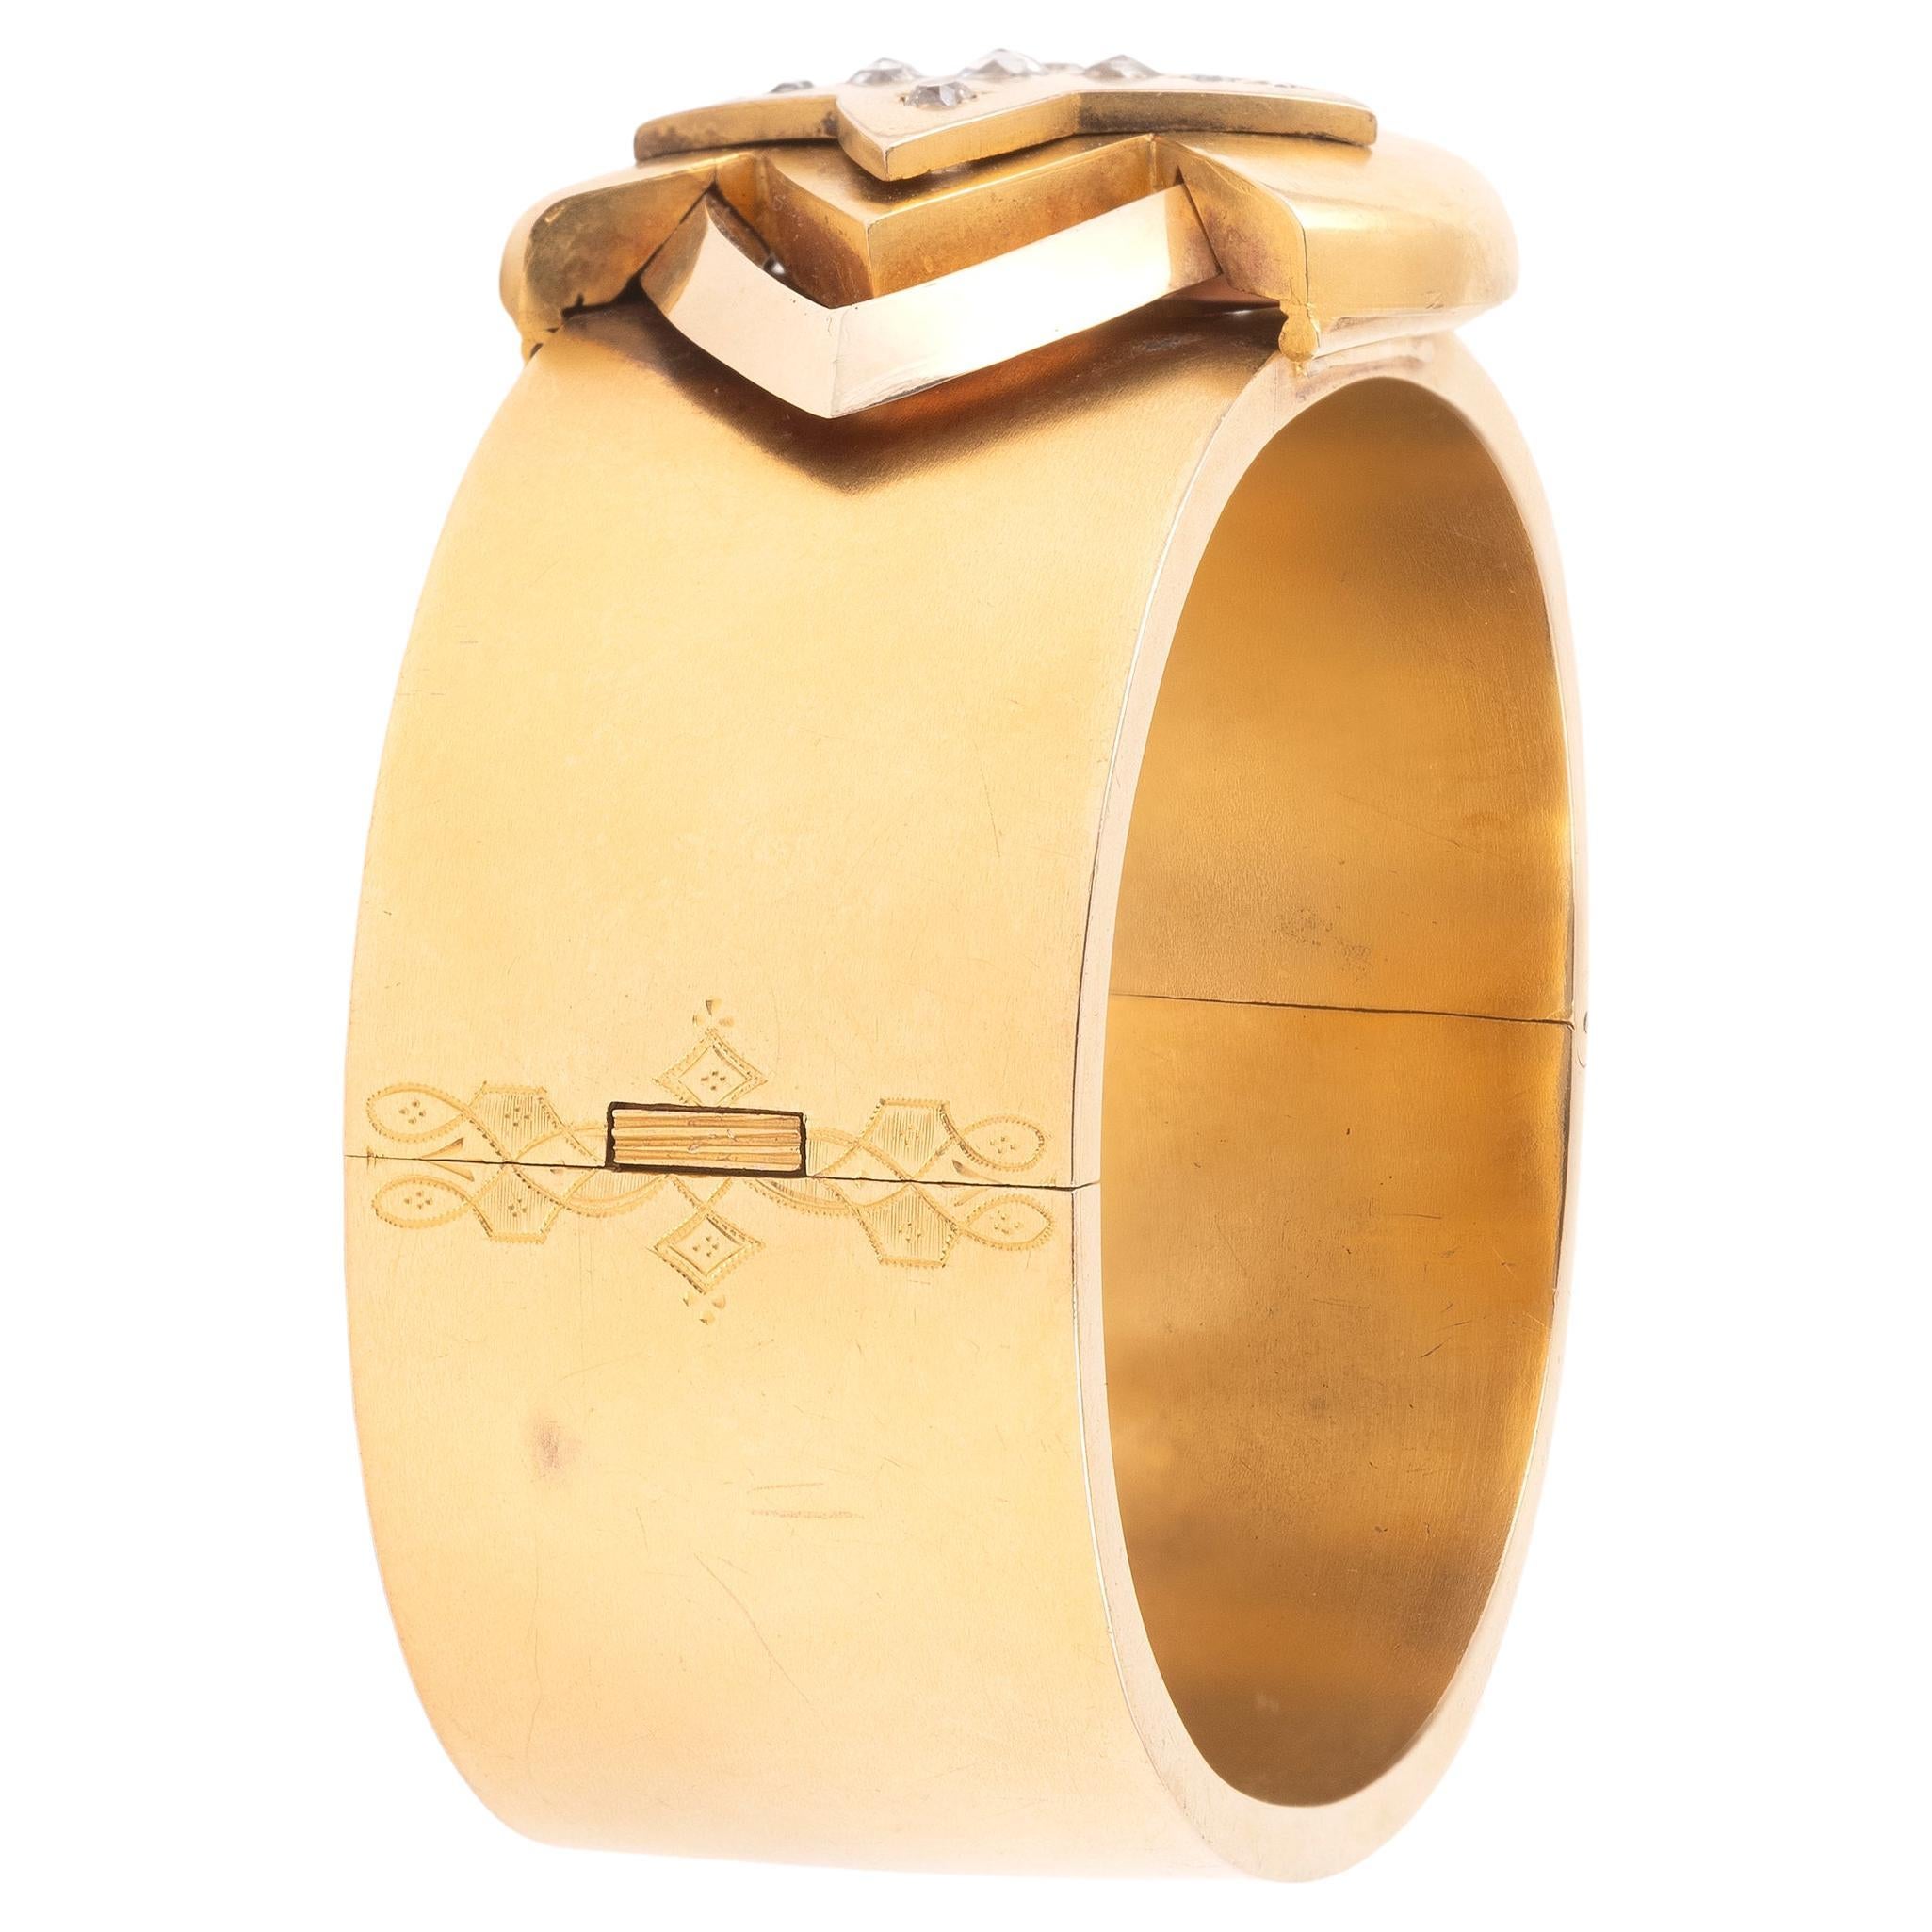 Un bracelet en diamants et or jaune 14K mat et poli avec un compartiment secret circa 1890. Travaux d'analyse russes.
Poids brut : 46,80 gr. 
Tour de poignet : 16,5 cm.